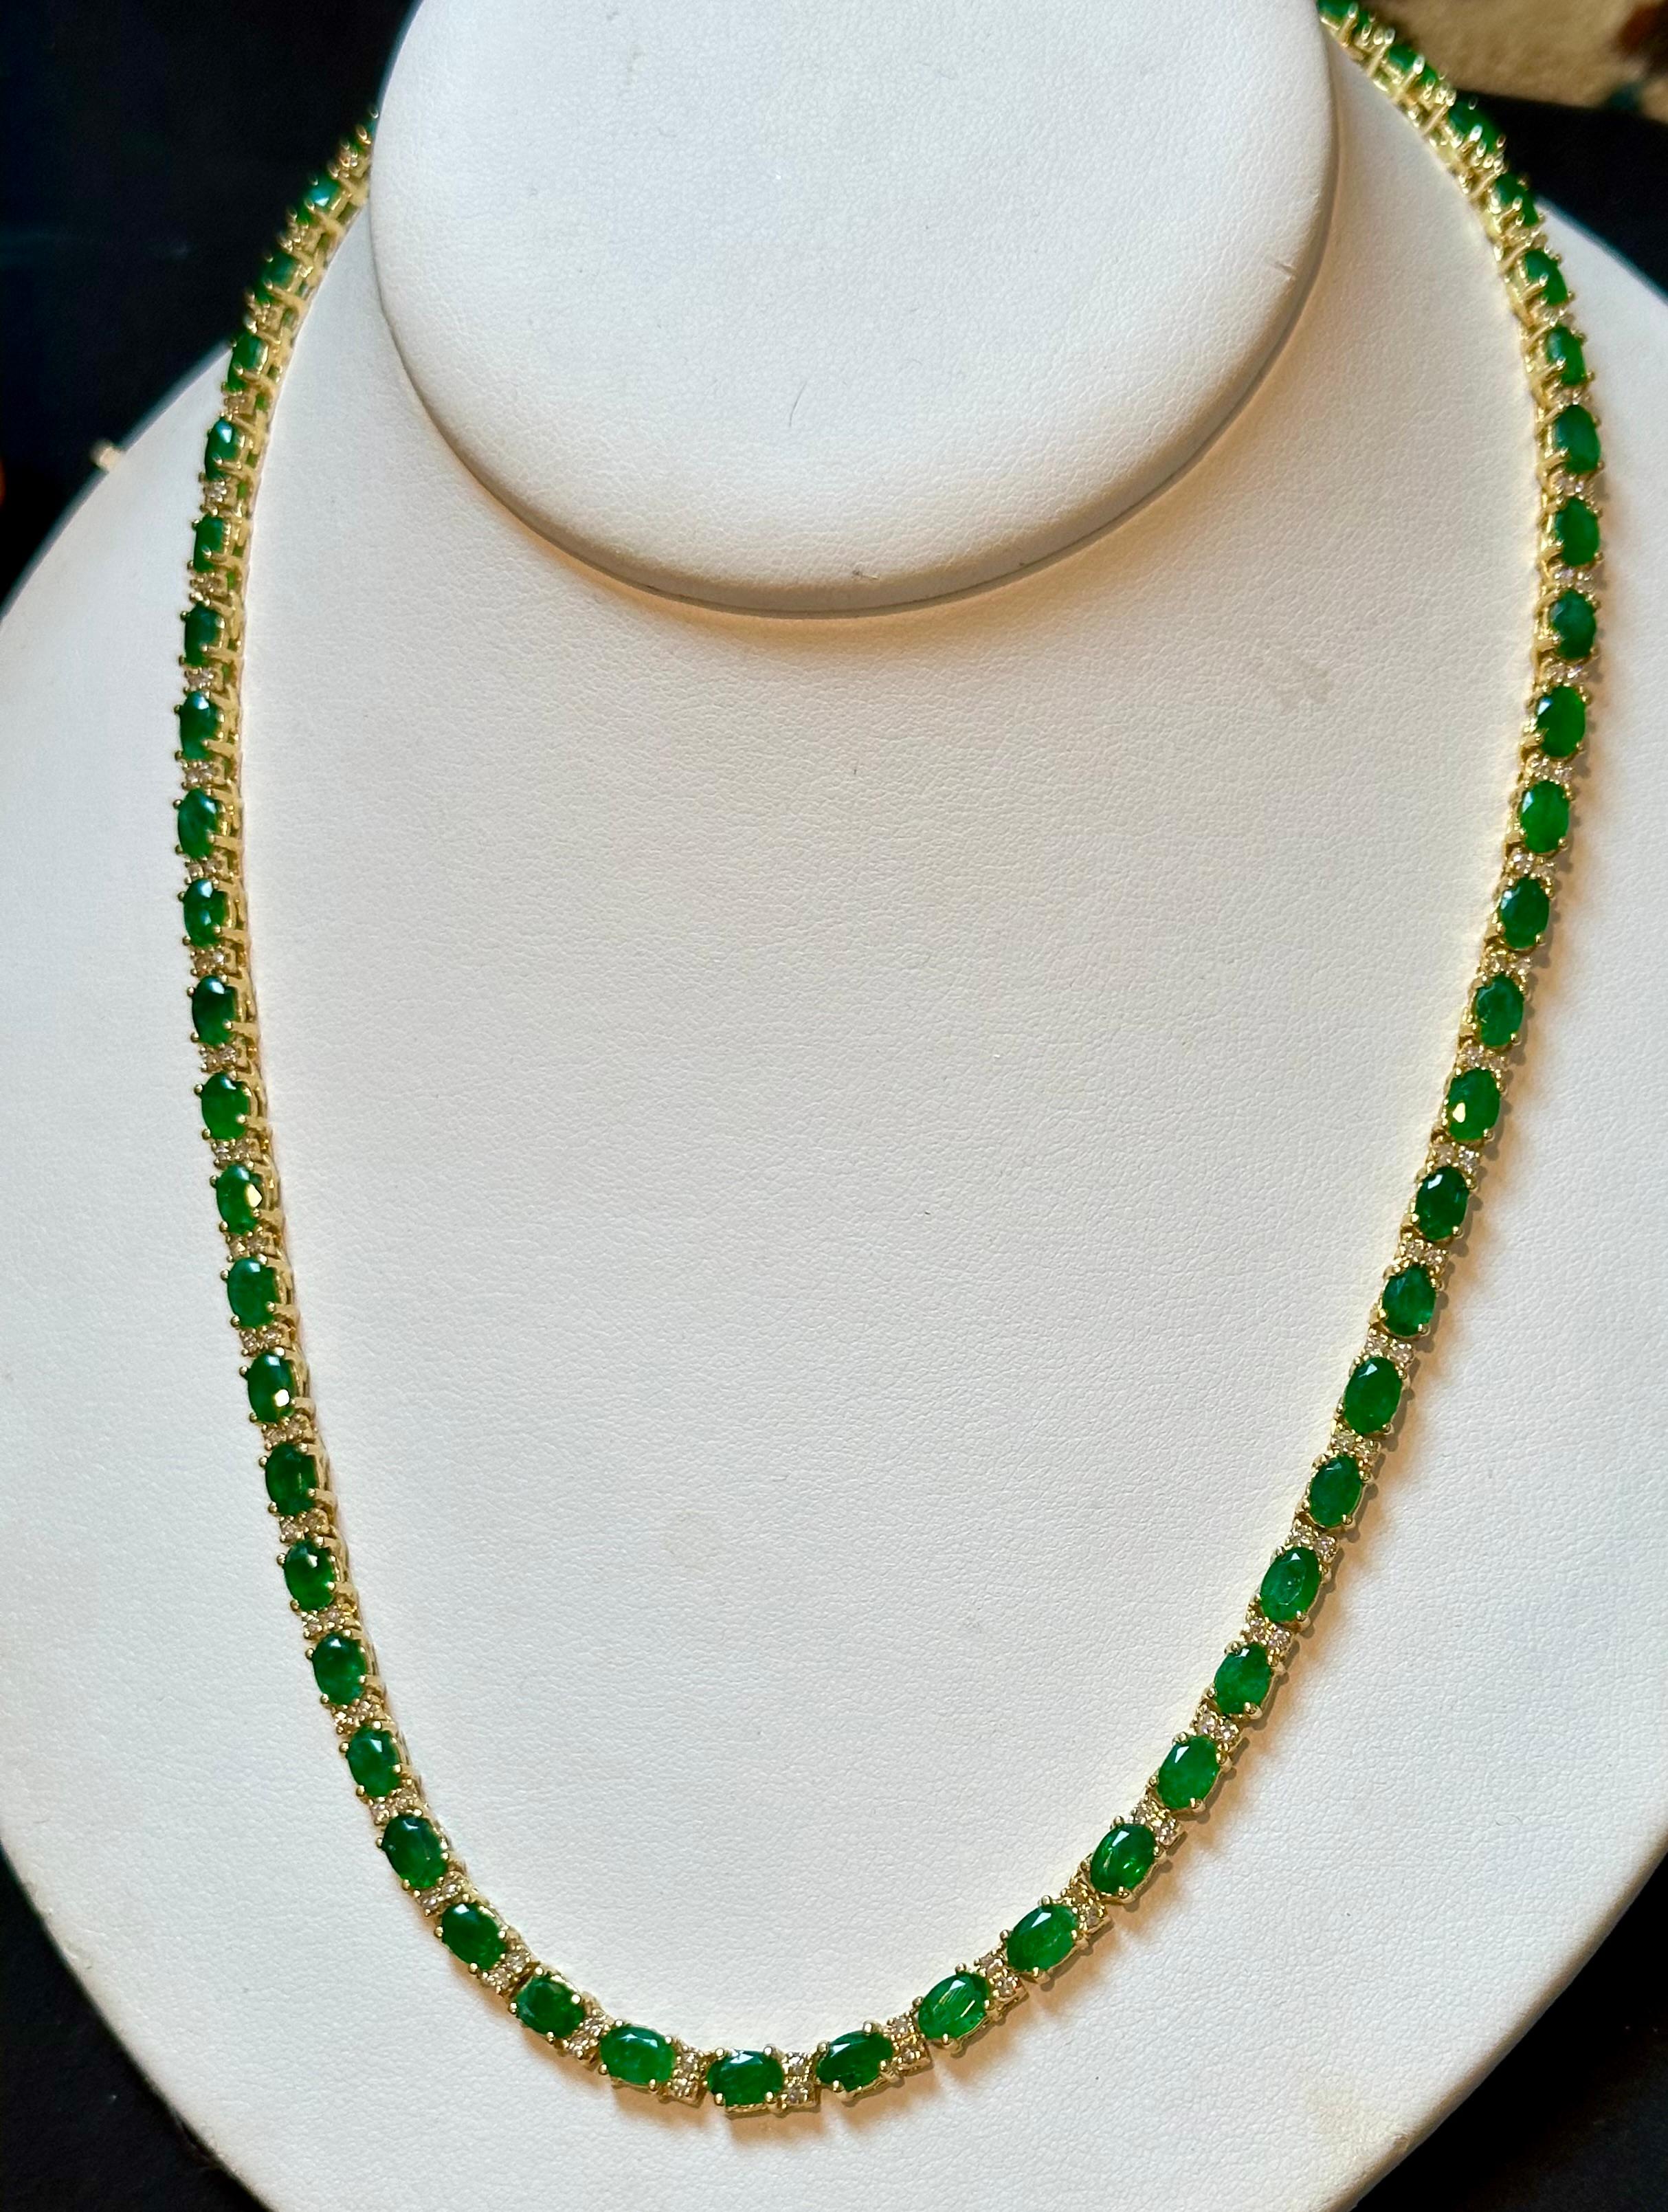 30 Carat Oval Brazilian Emerald & 3 Carat Diamond Tennis Necklace 14 Karat Gold For Sale 2